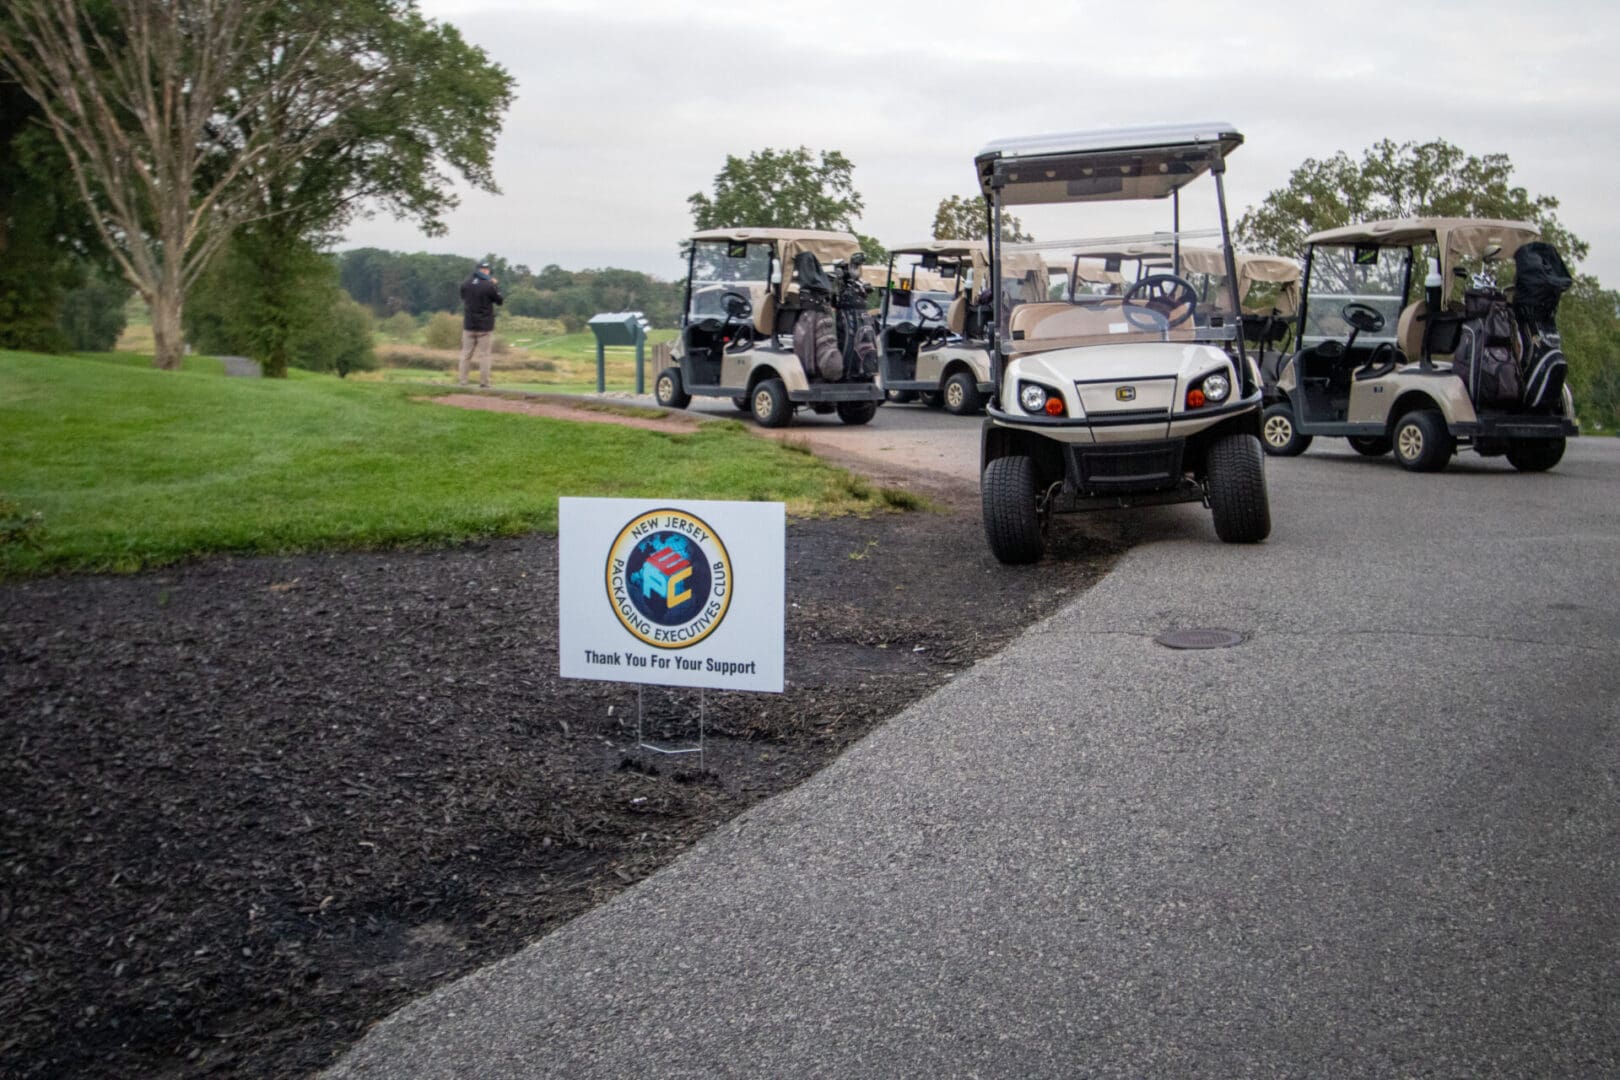 appreciation sign and golf carts